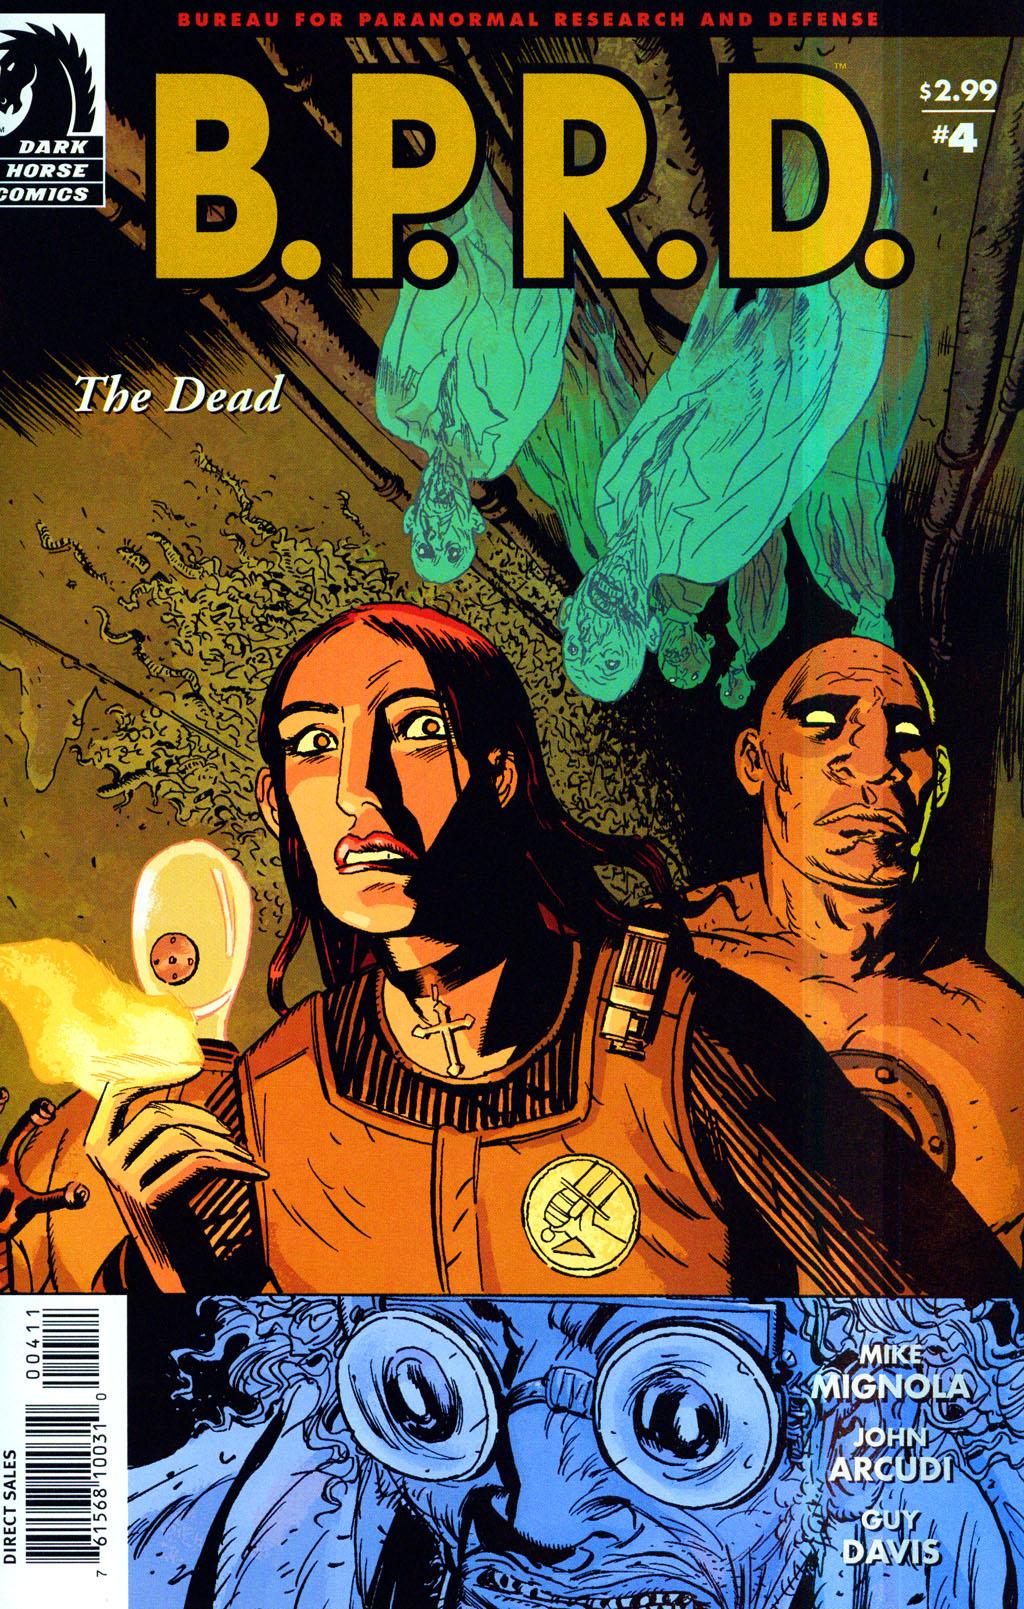 B.P.R.D.: The Dead Vol. 1 #4